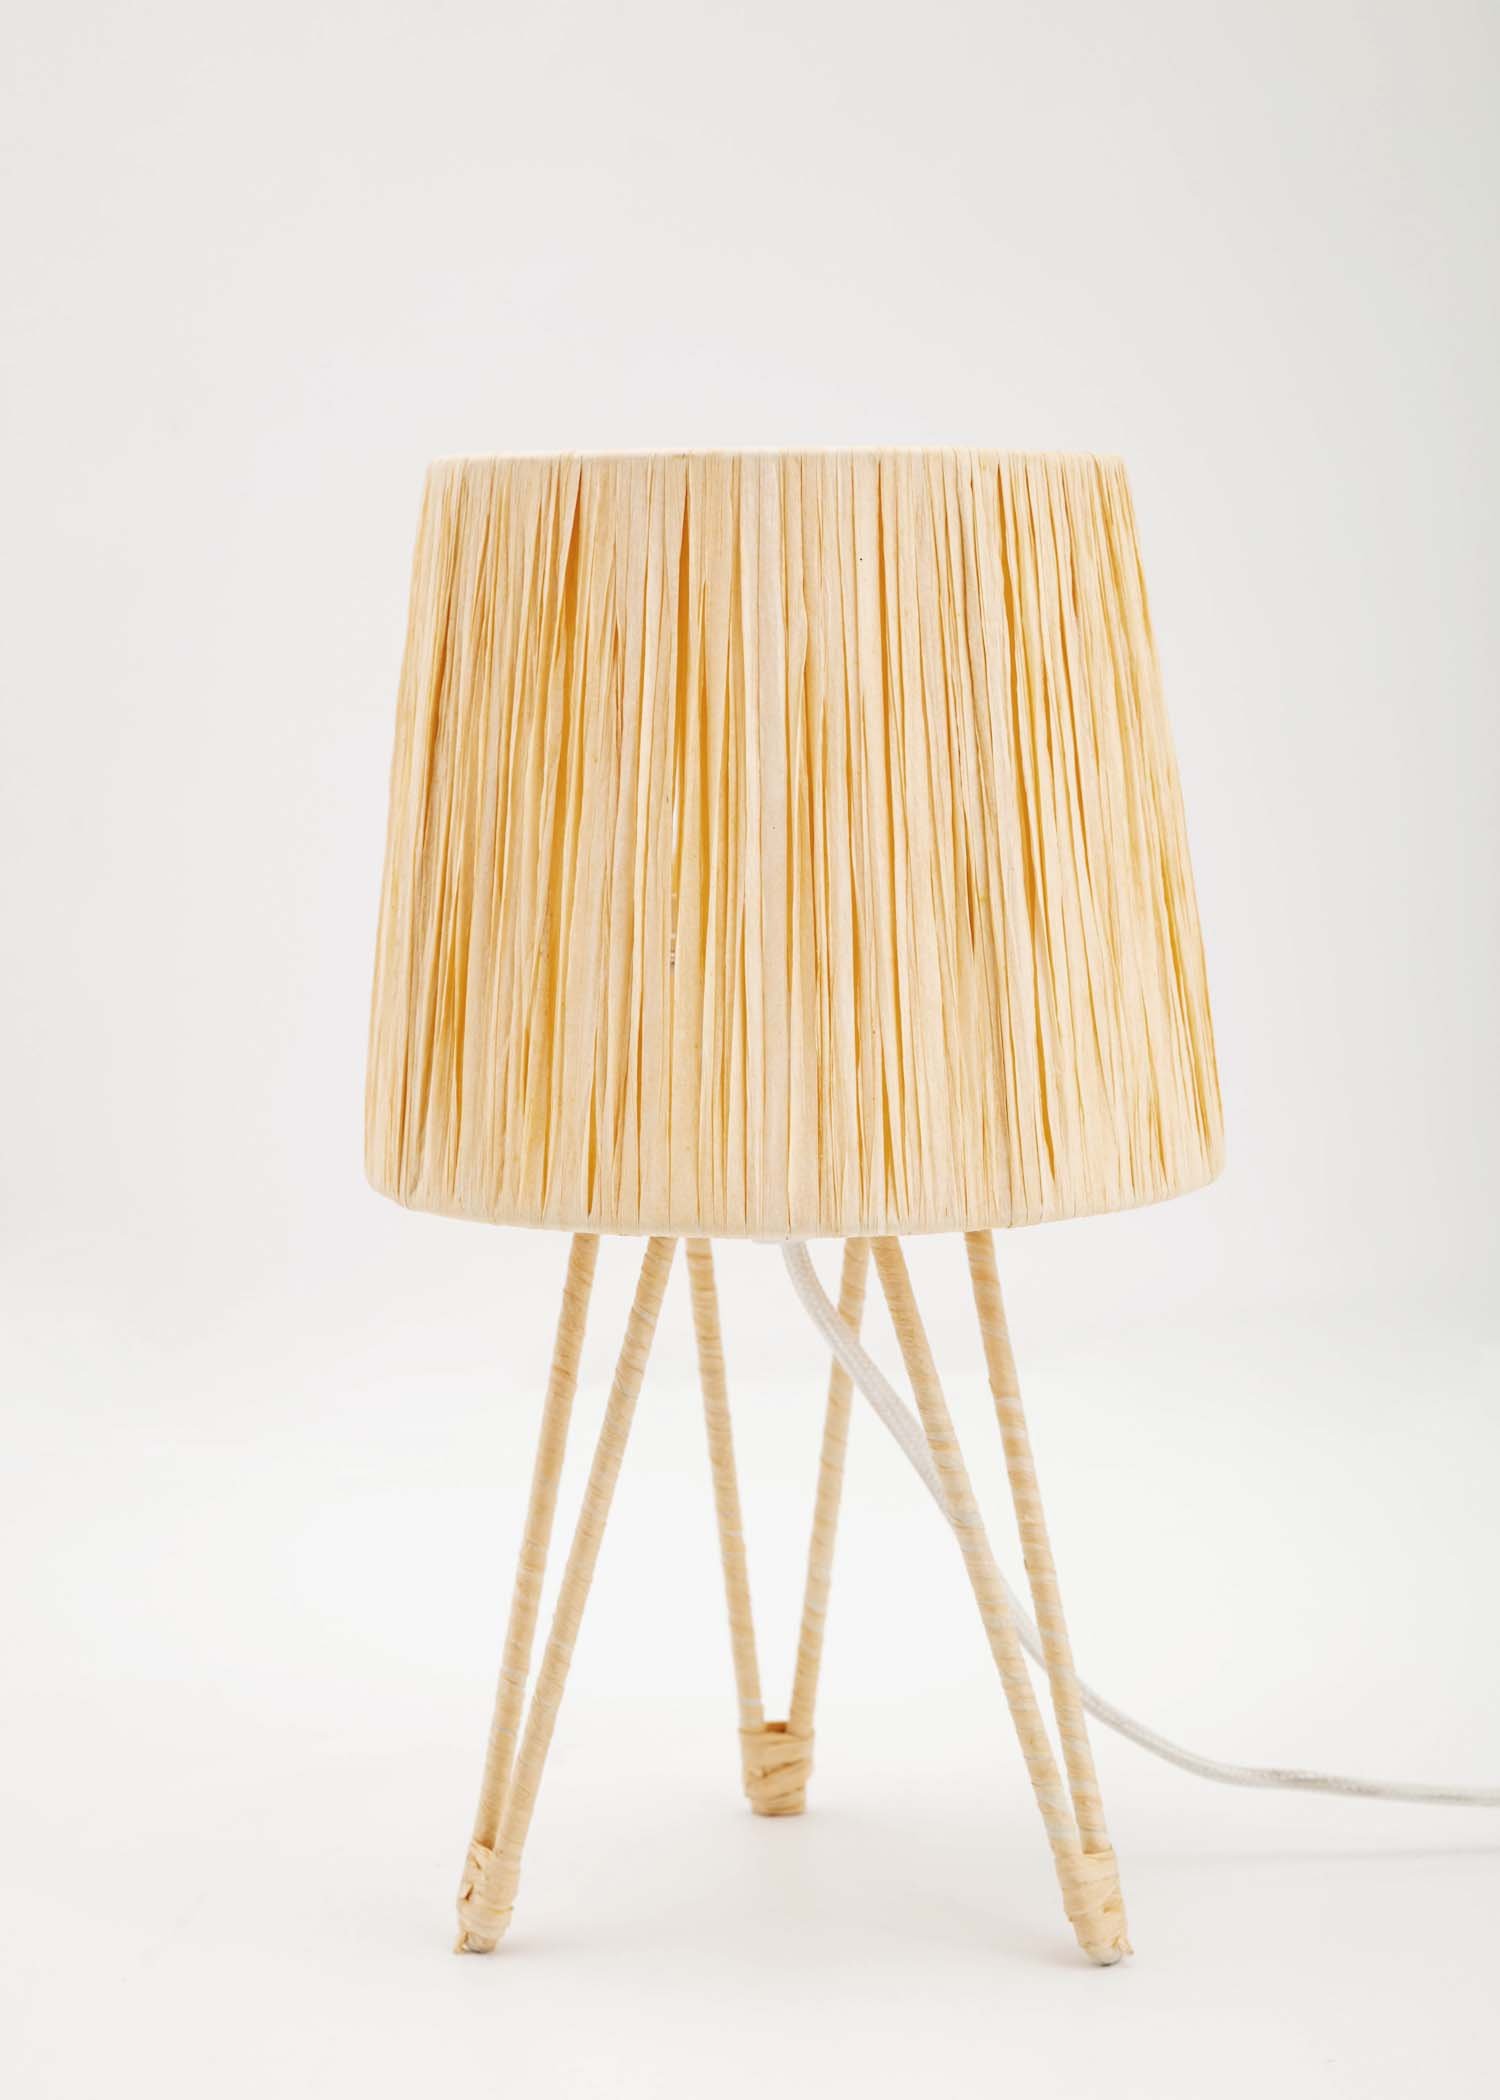 Simo table lamp